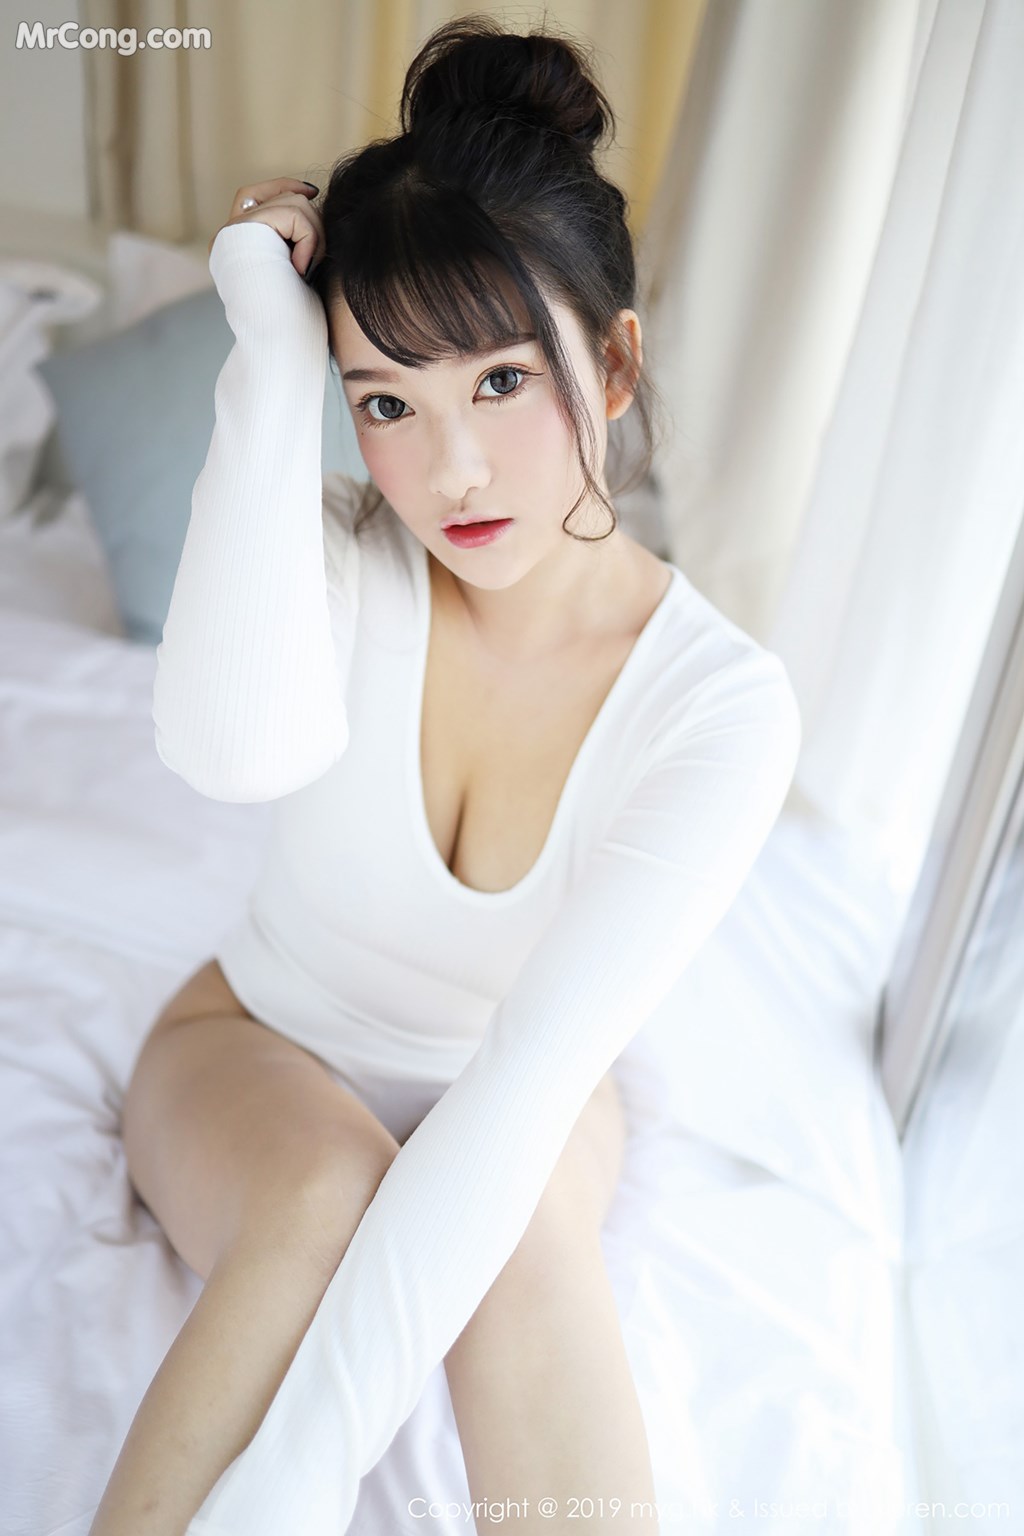 MyGirl Vol.342: Model Xiao You Nai (小 尤奈) (41 photos) photo 1-7